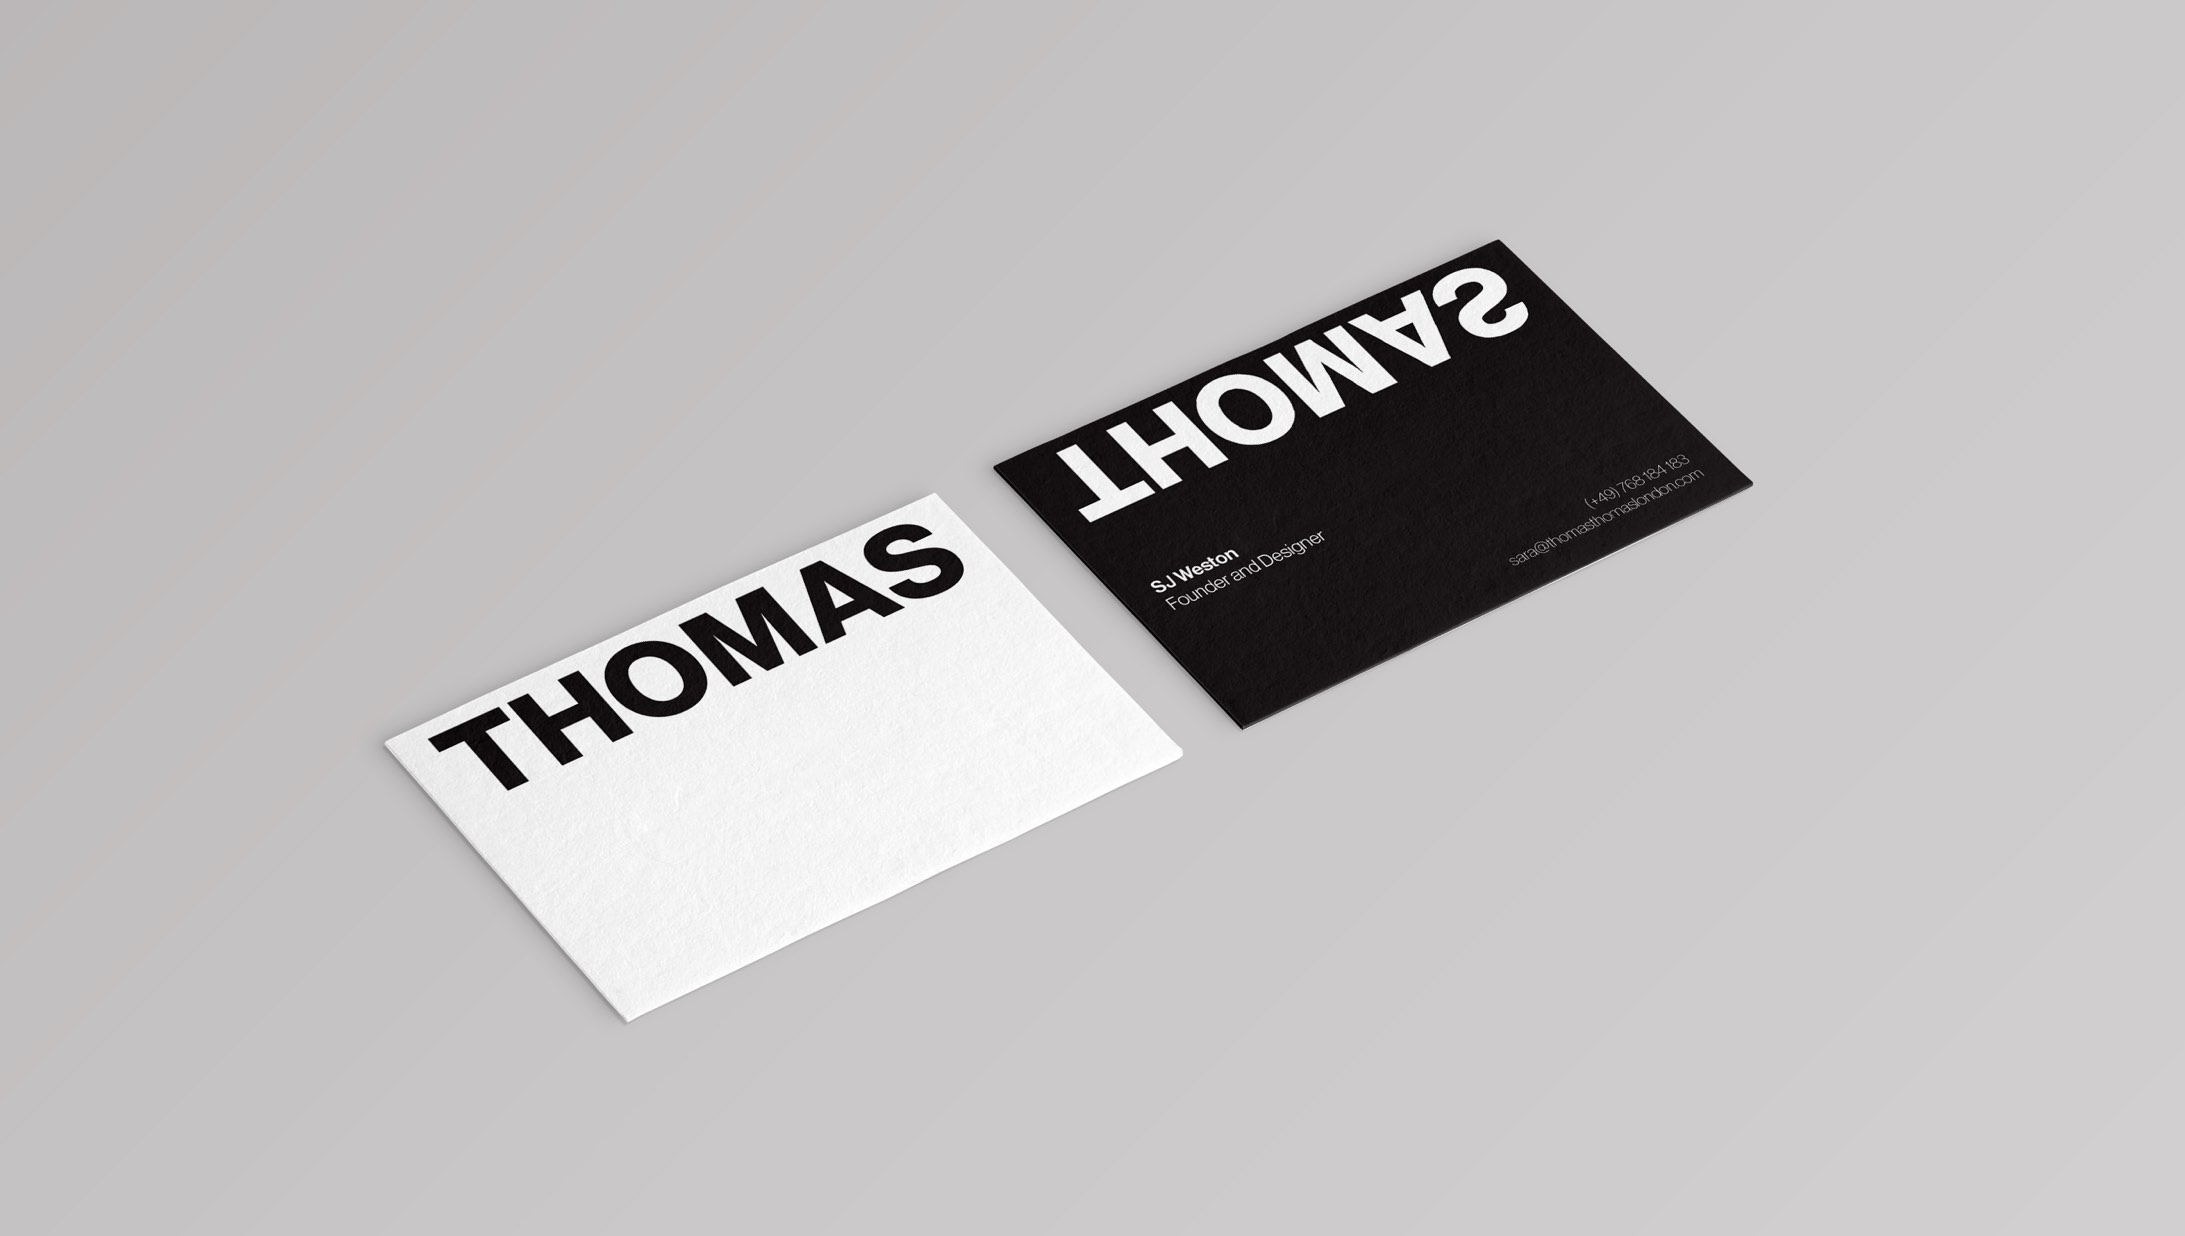 Thomas_Cards